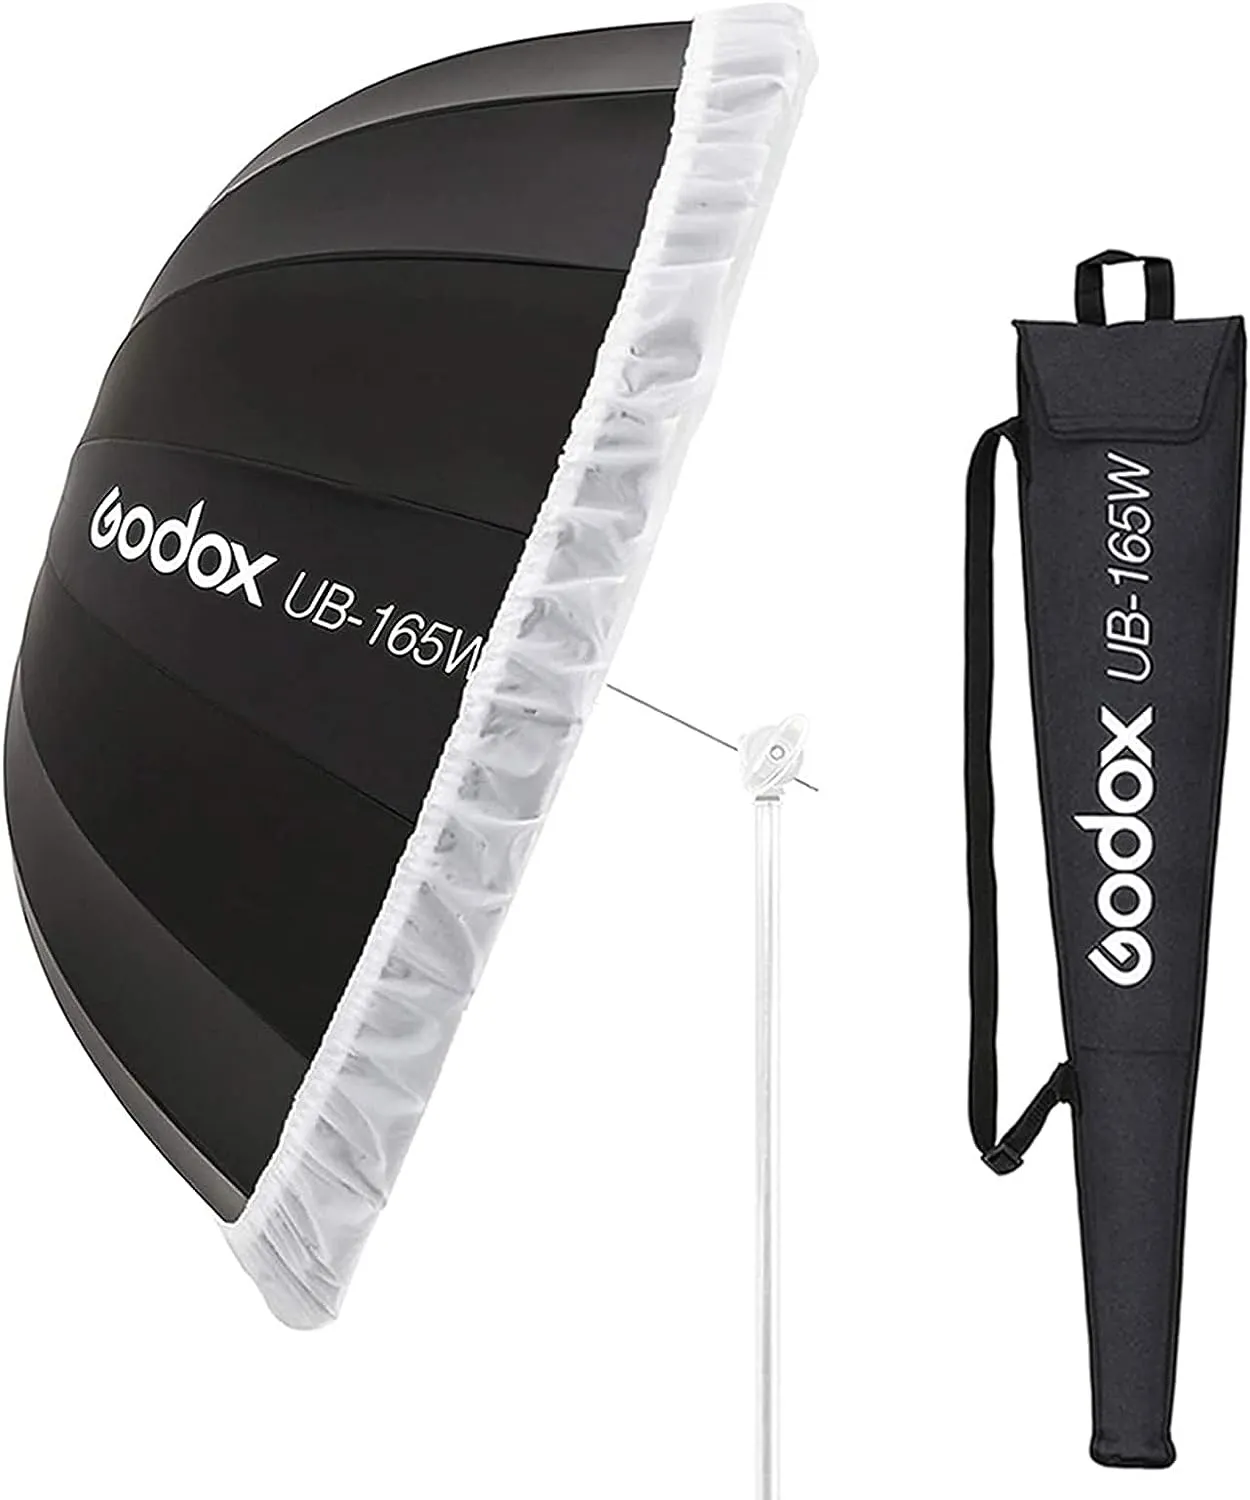 Paraguas Godox de 65 ''/165cm, Softbox, reflector parabólico de paraguas para fotografía con tela difusora y bolsa de transporte